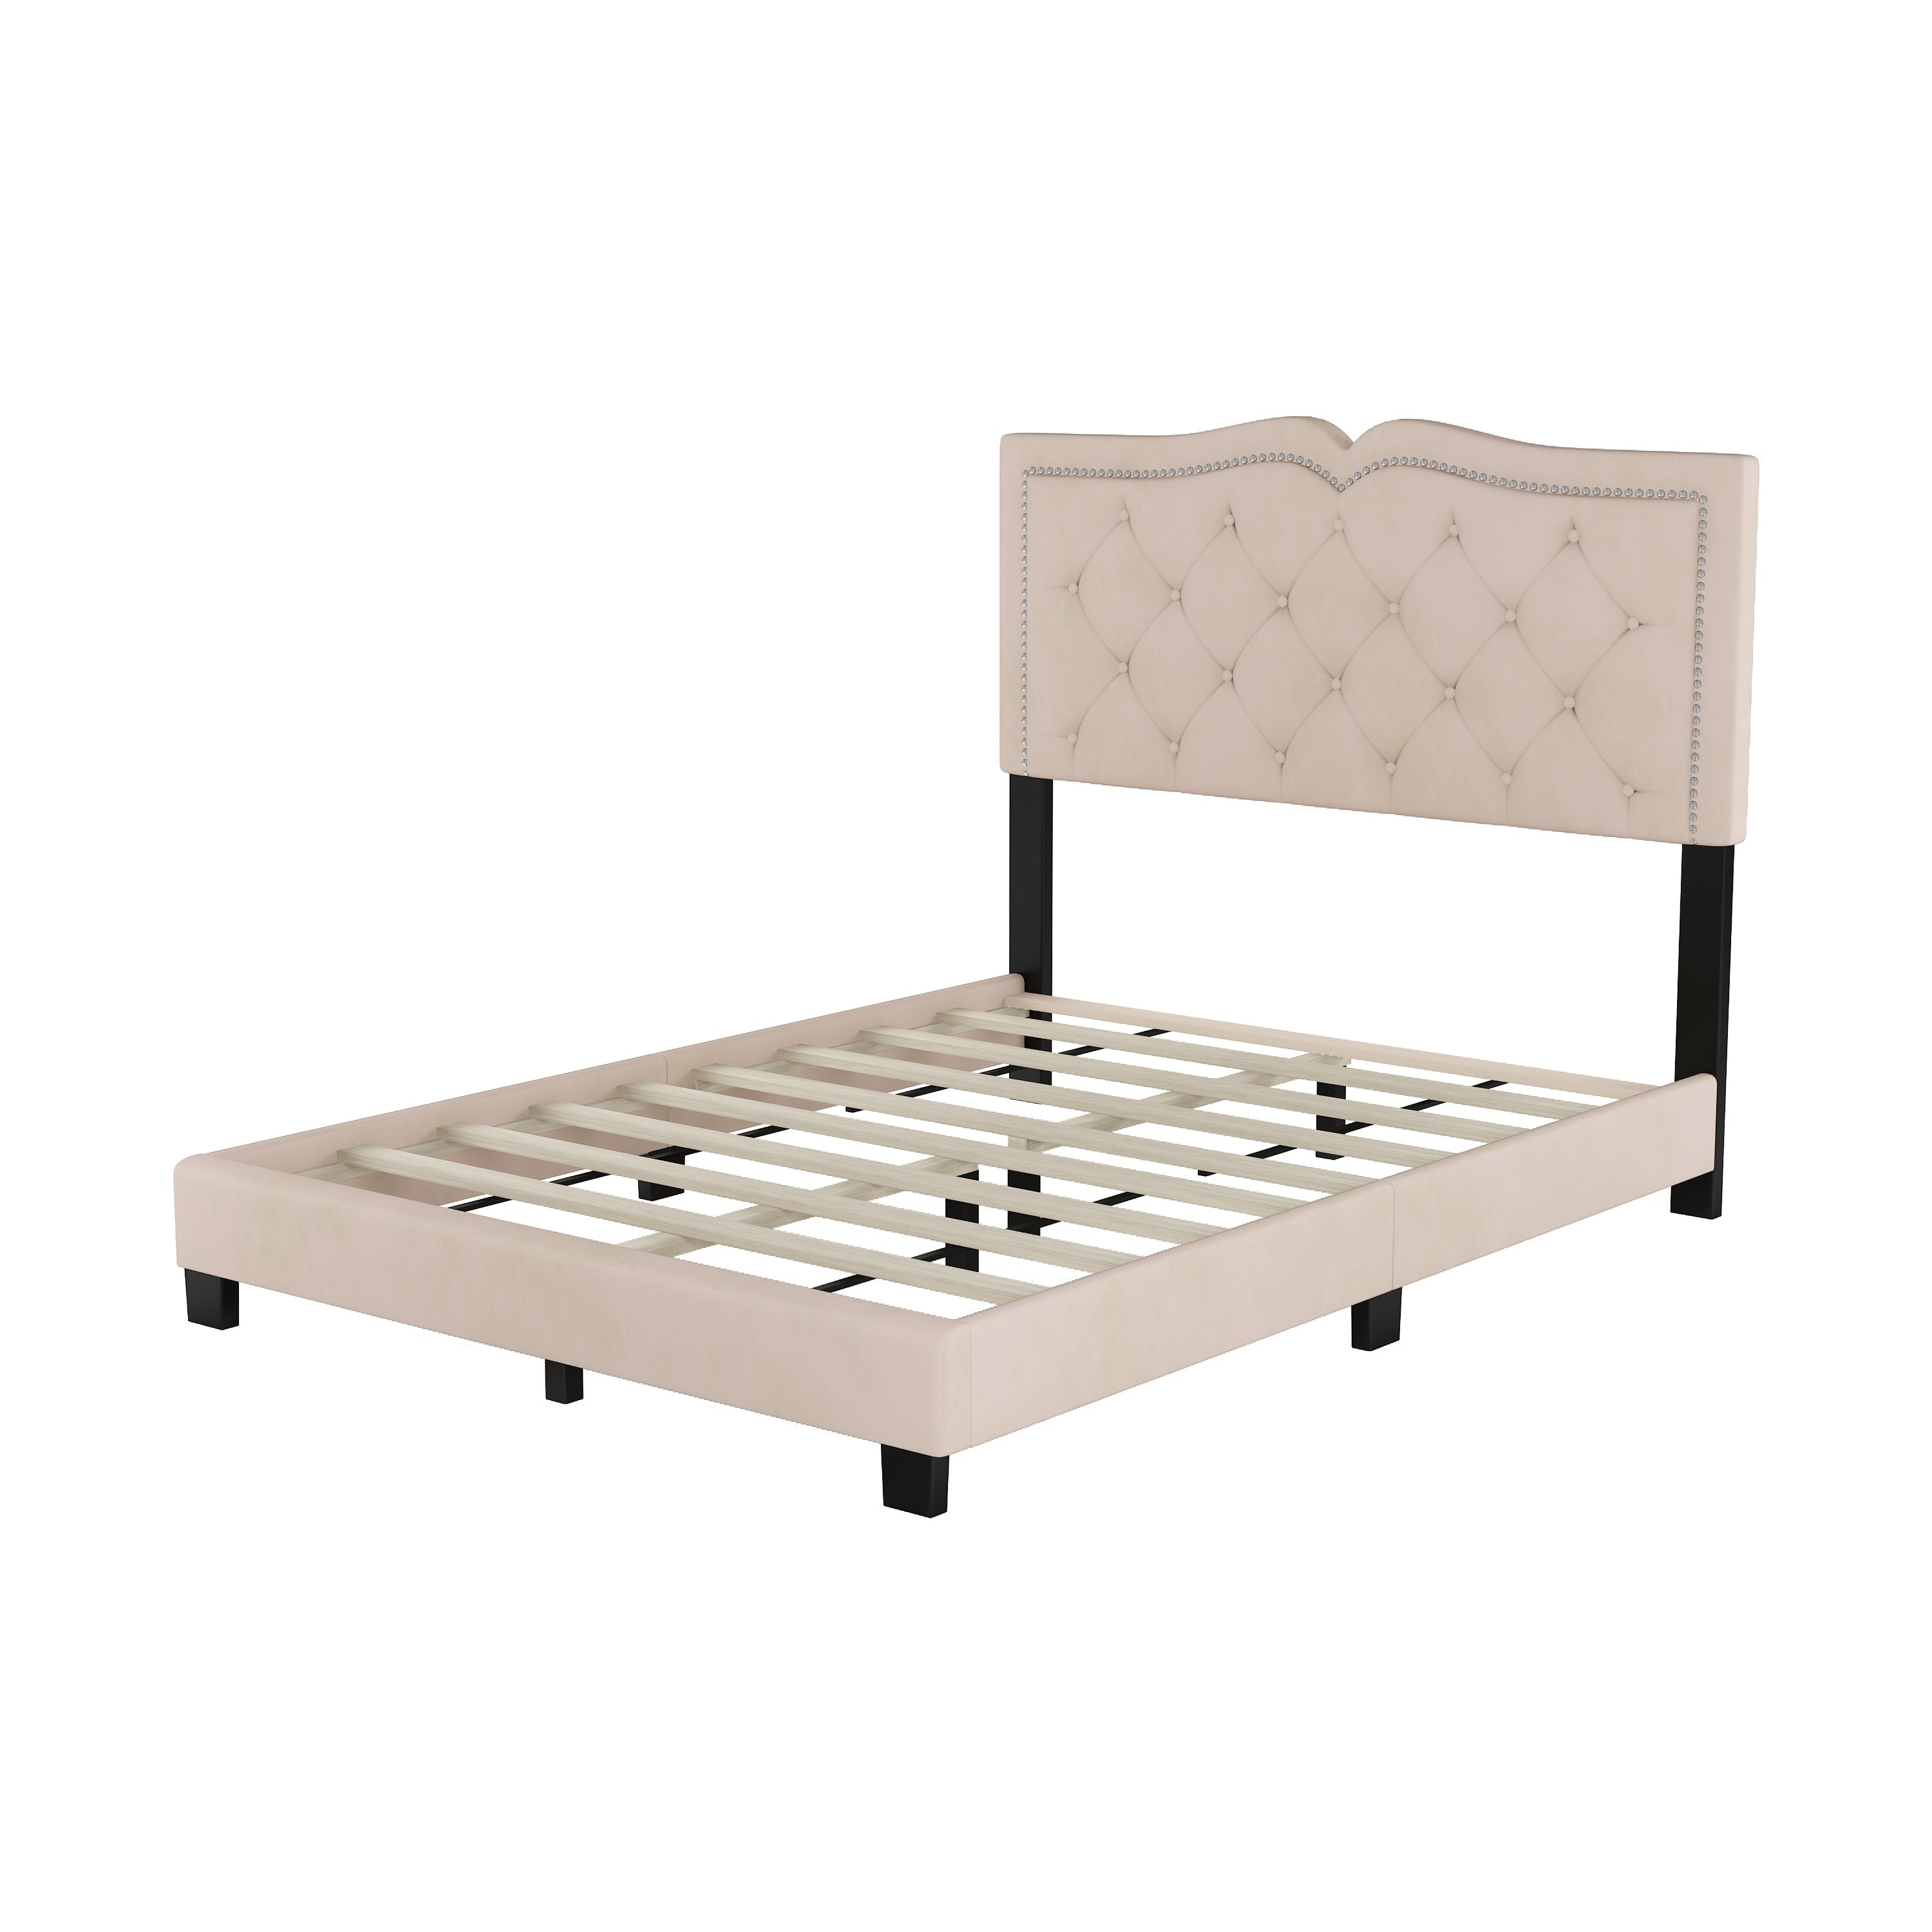 Bellemave® Velvet Upholstered Platform Bed with Tufted Headboard and Rivet Design Bellemave®